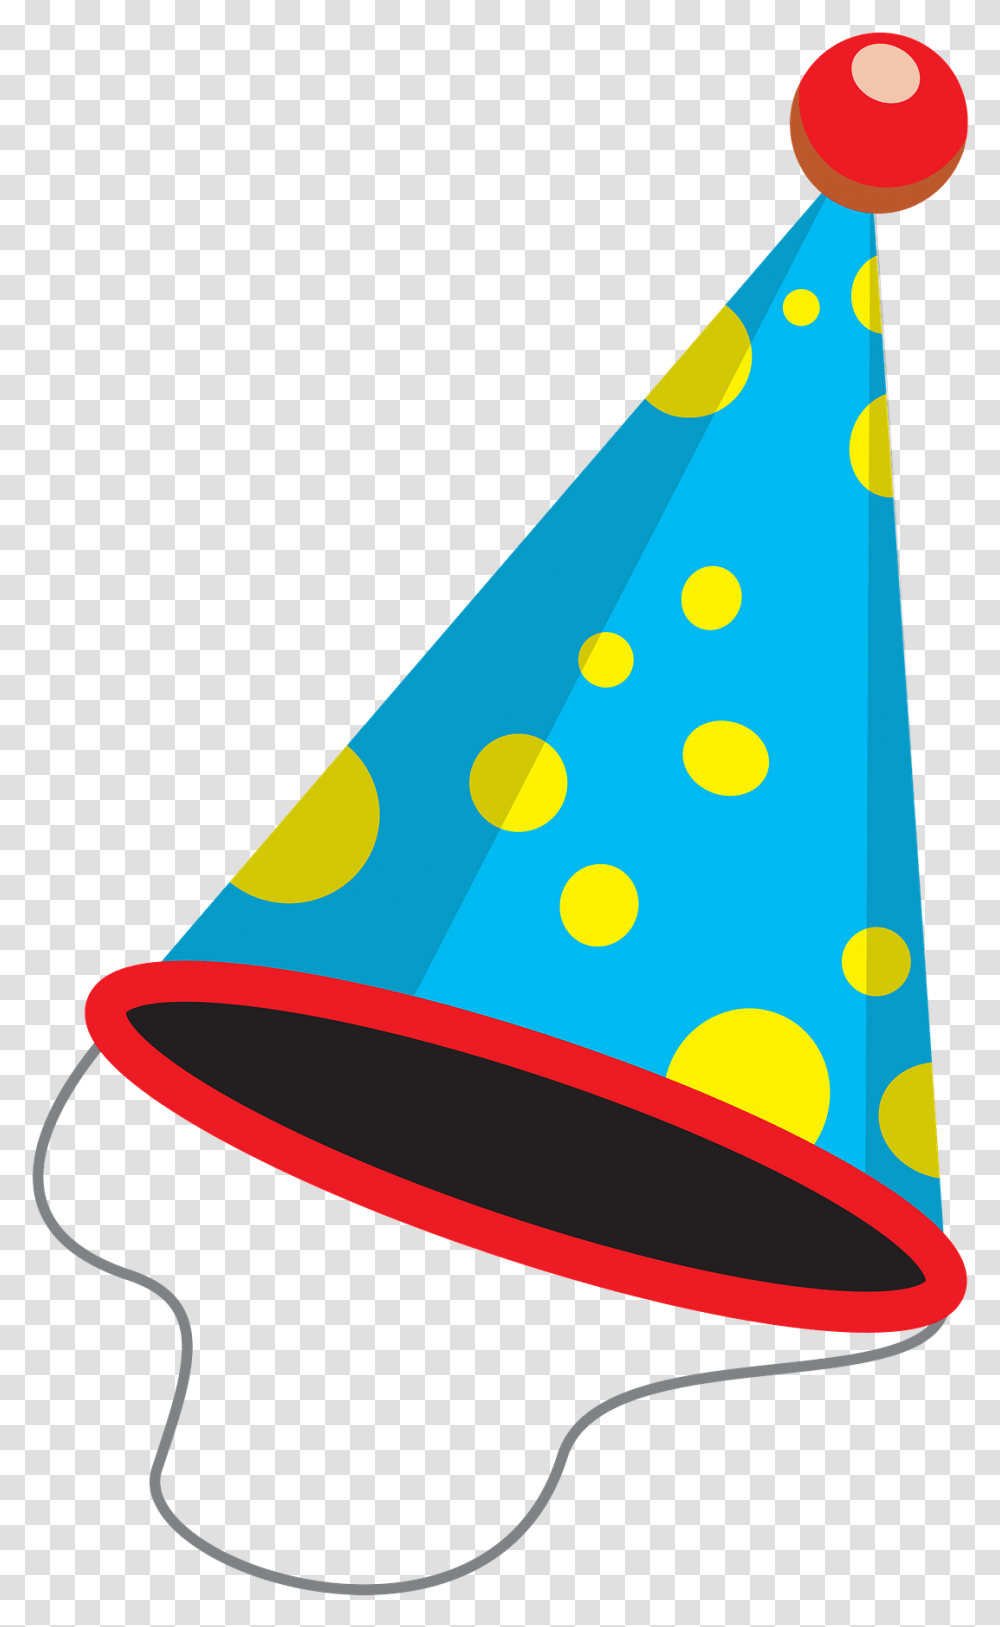 Birthday Hat Clipart Birthday Hat Clipart, Clothing, Apparel, Party Hat Transparent Png